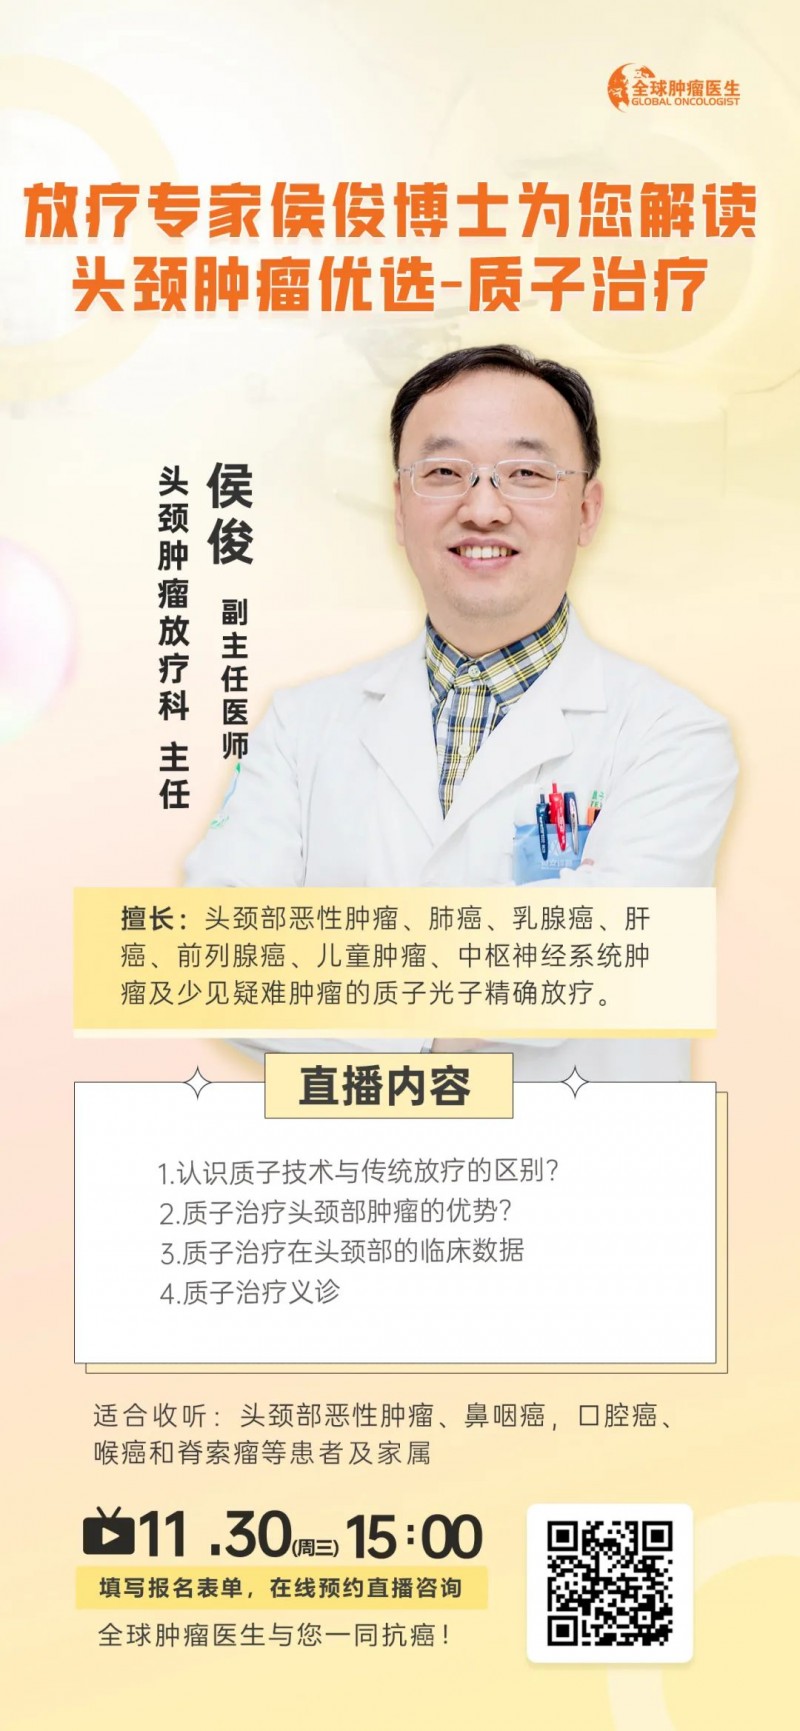 侯俊博士讲解质子治疗头颈部肿瘤的直播预告